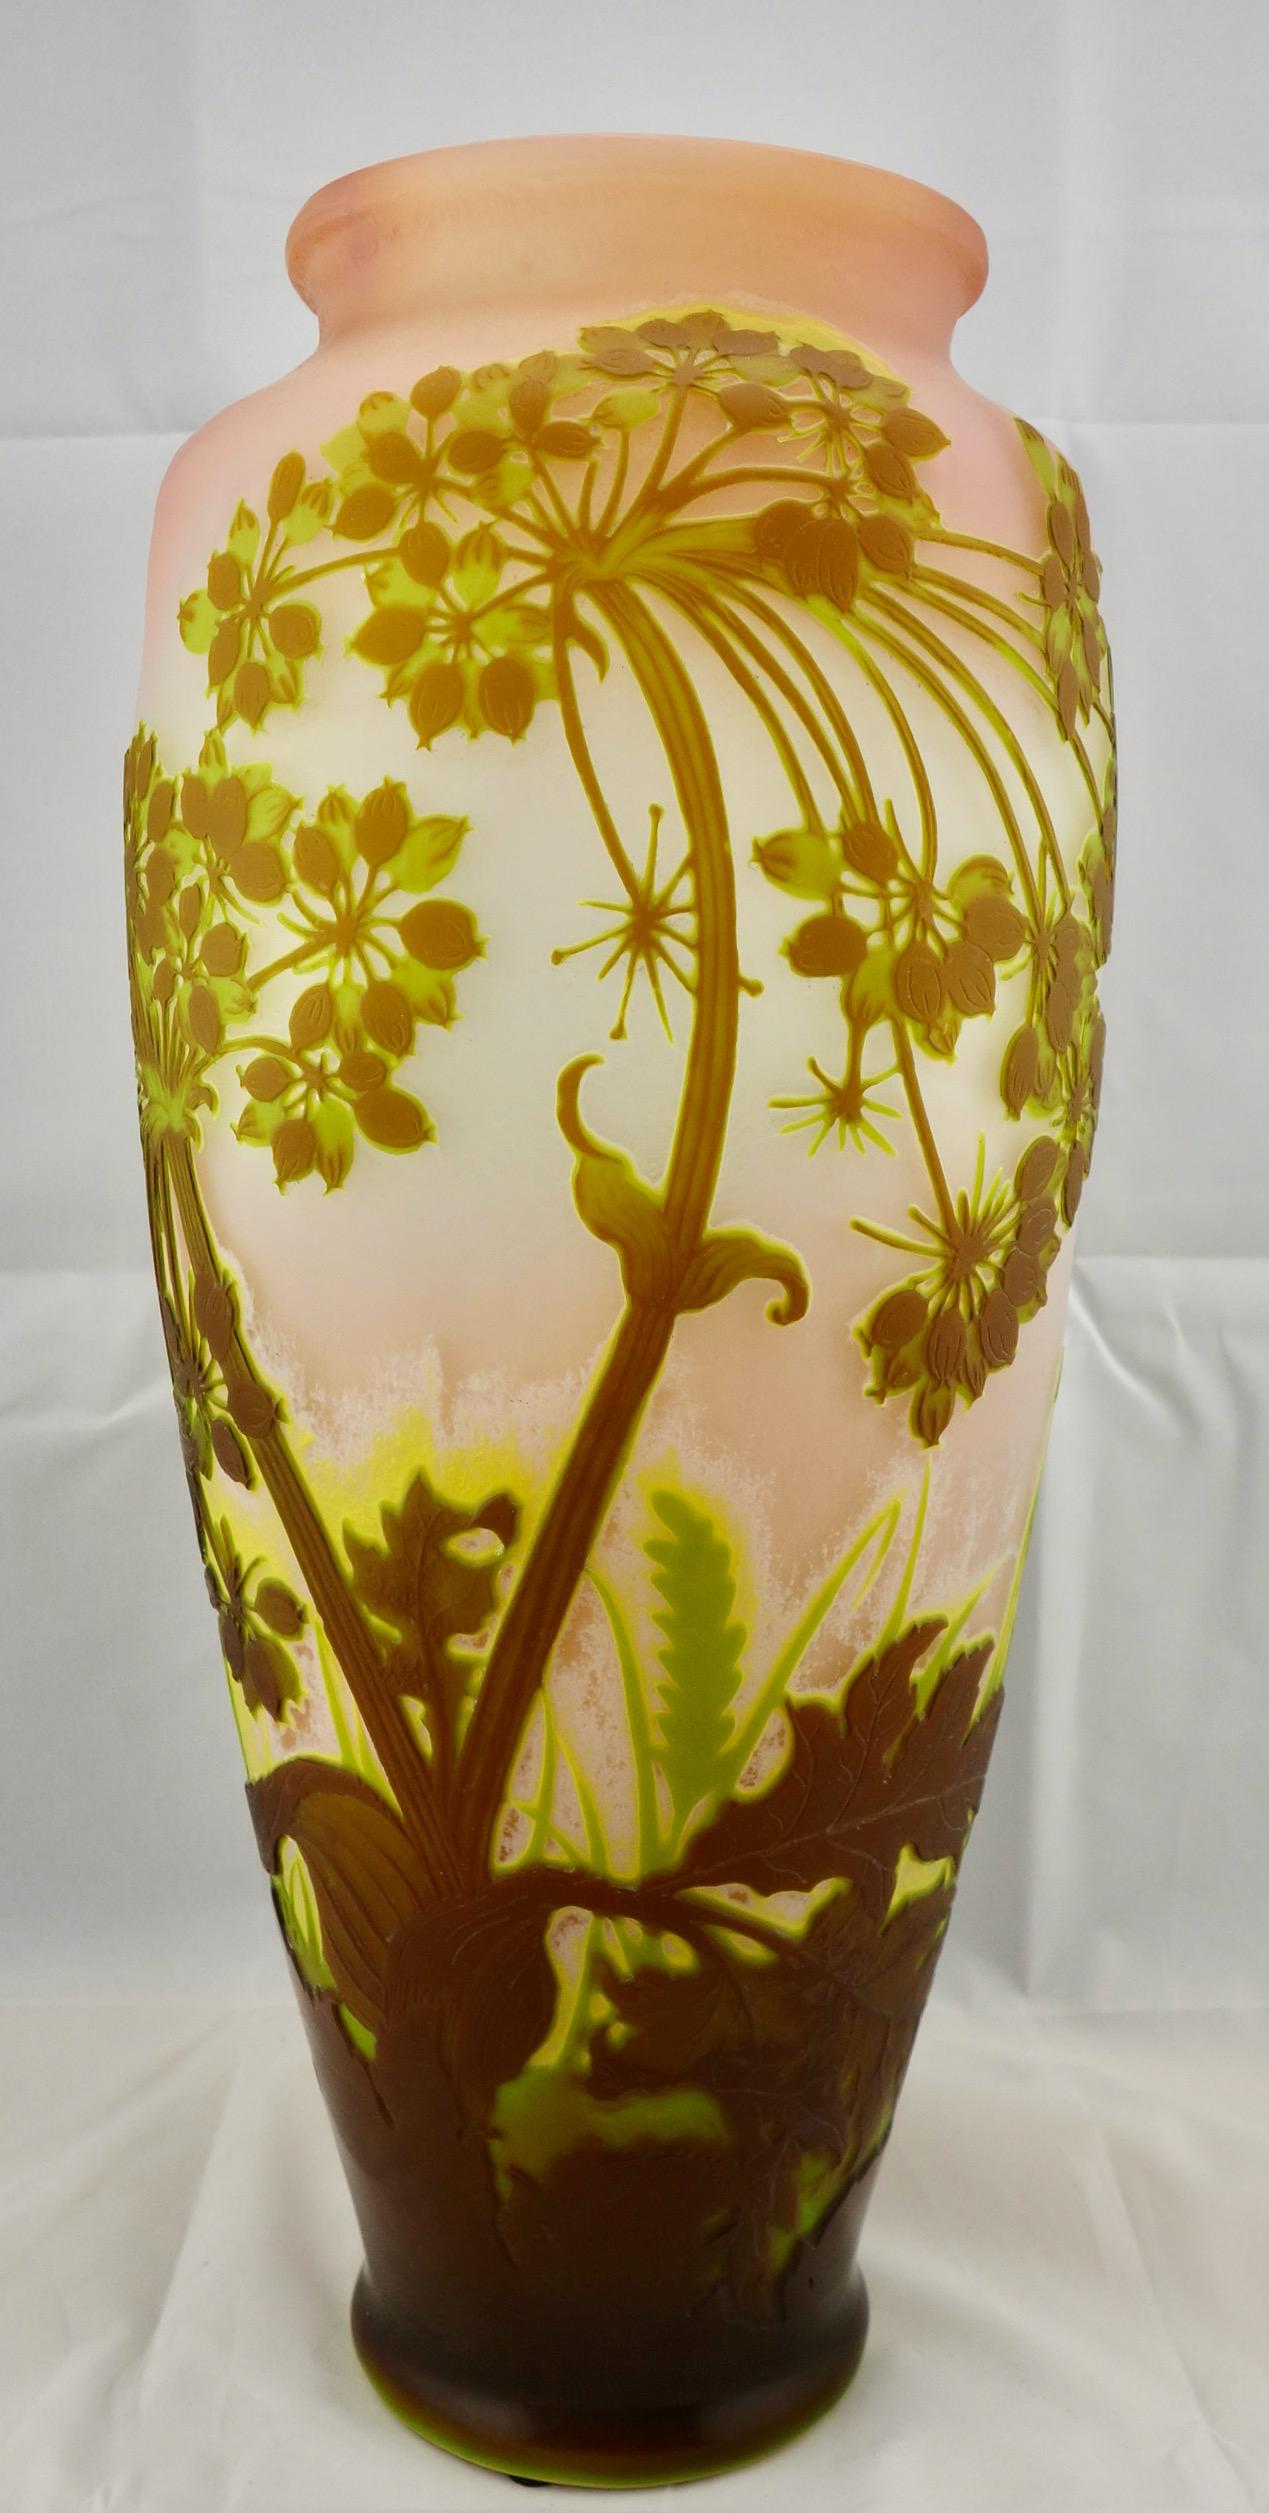 Vase allium en verre camée de Galle, vers le début des années 1900. Le verre camée est présent dans au moins trois couleurs sur le fond clair. Le vase est signé en camée, et a été fabriqué dans les années 1900. Il mesure 18 1/4